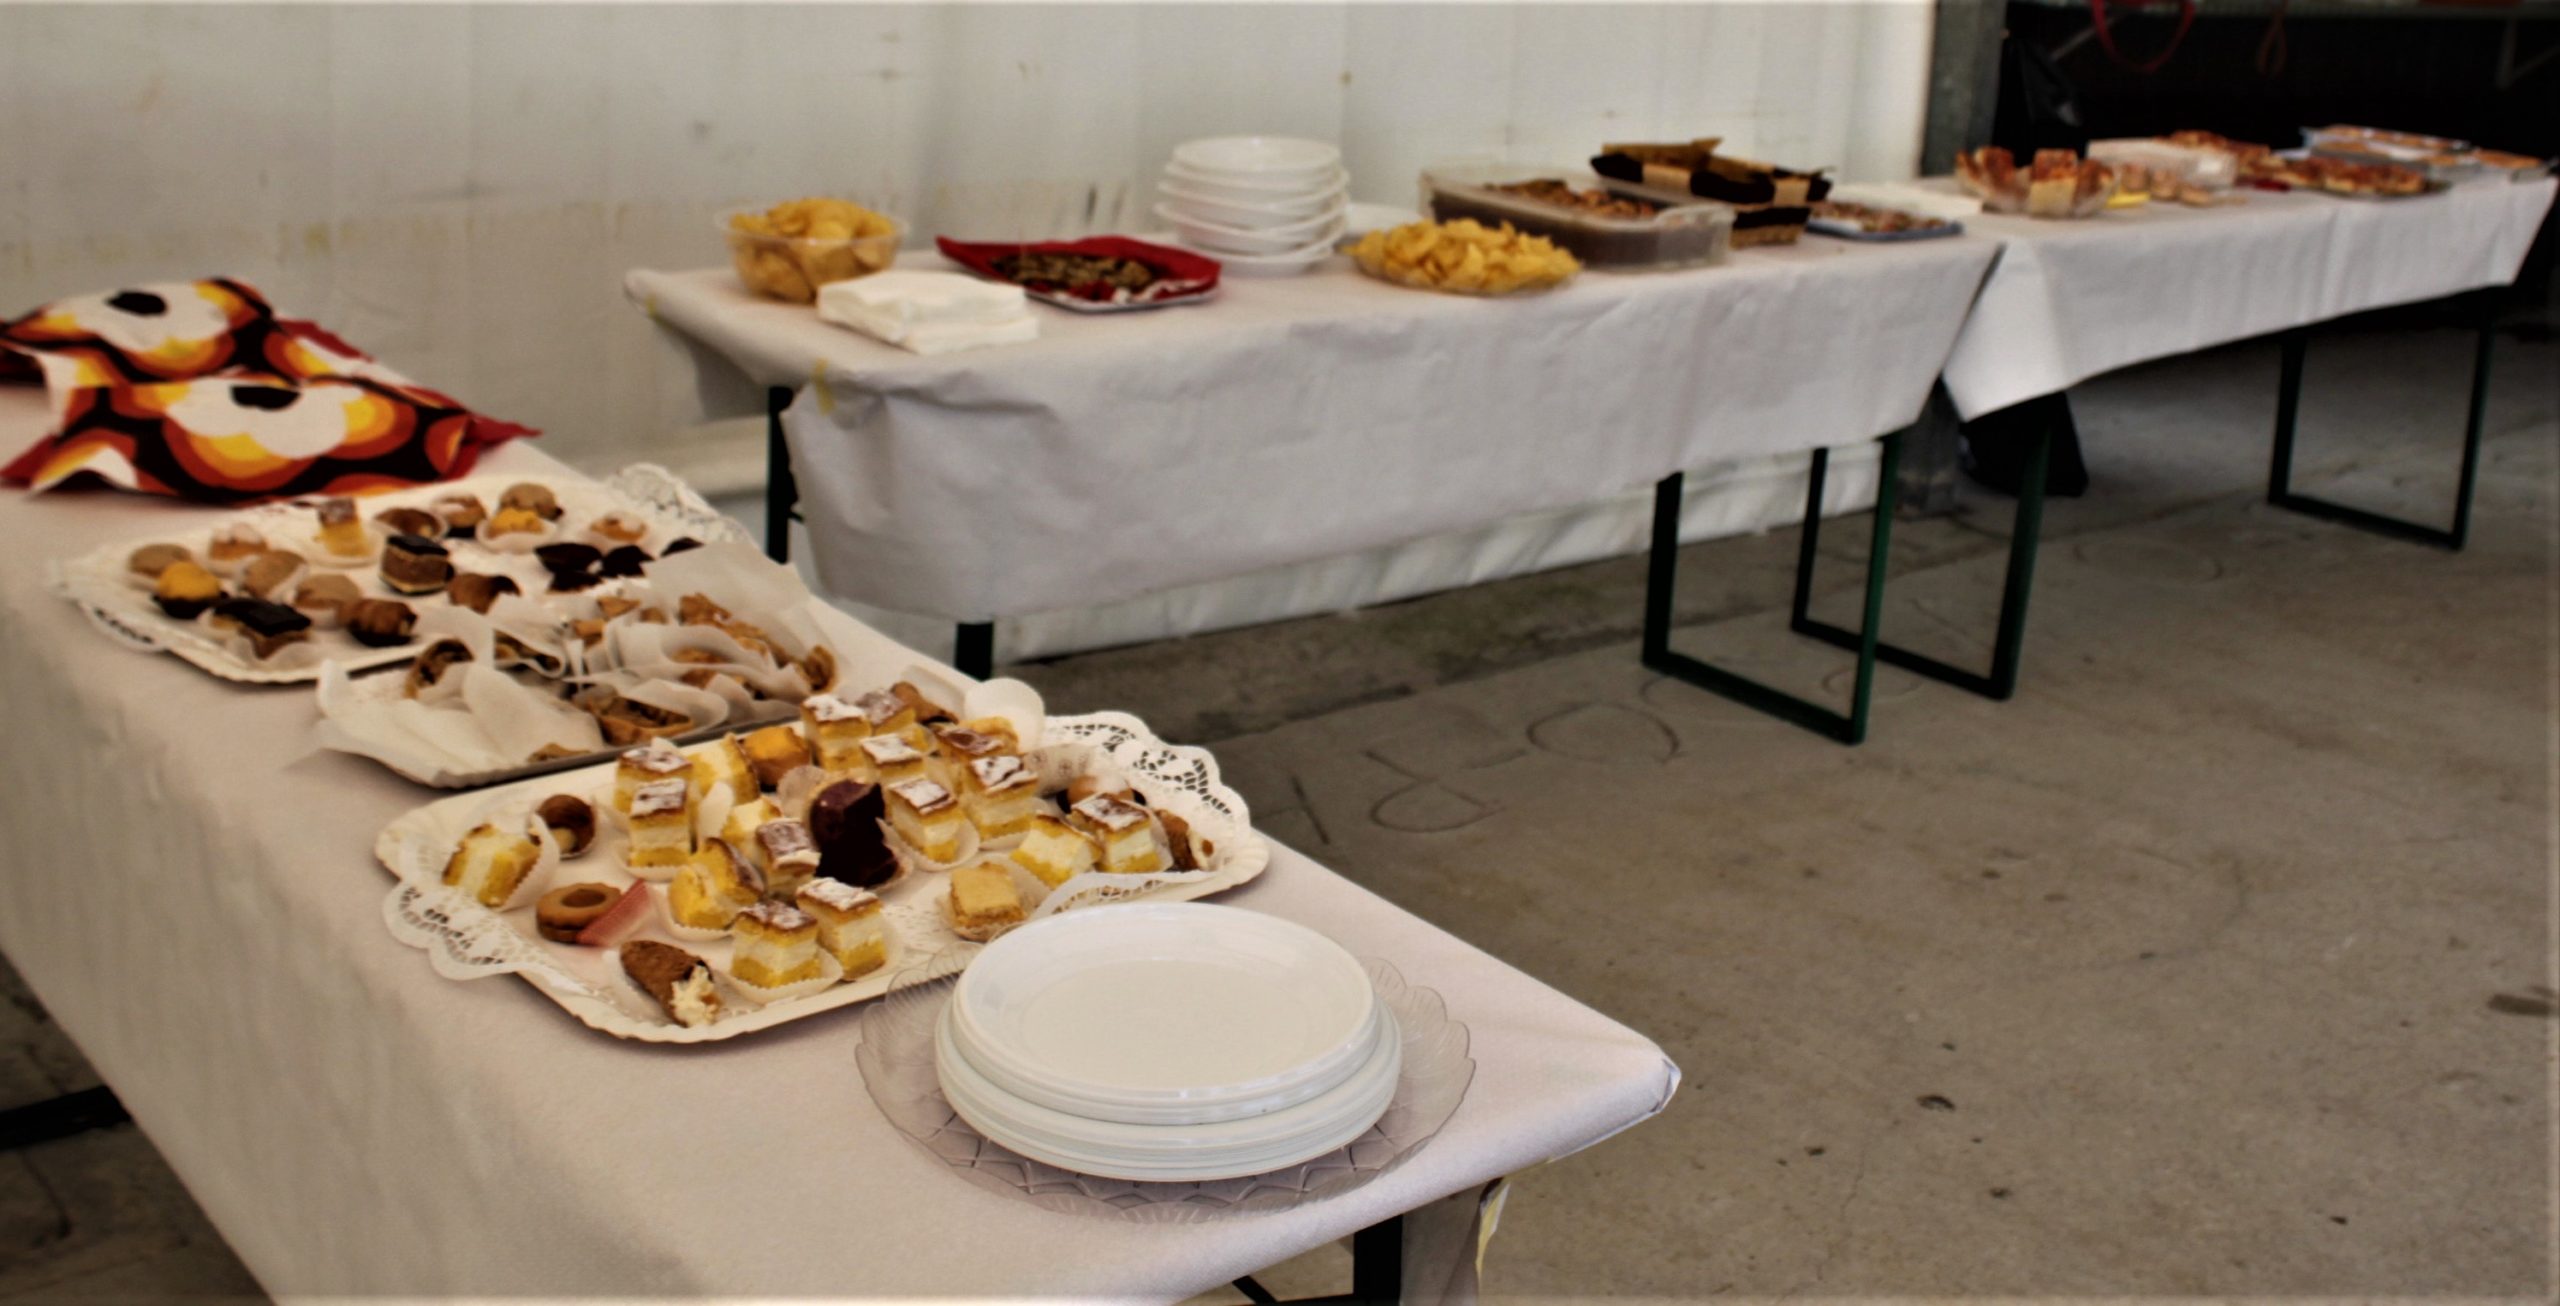 03 - Il buffet preparato dalle volontarie